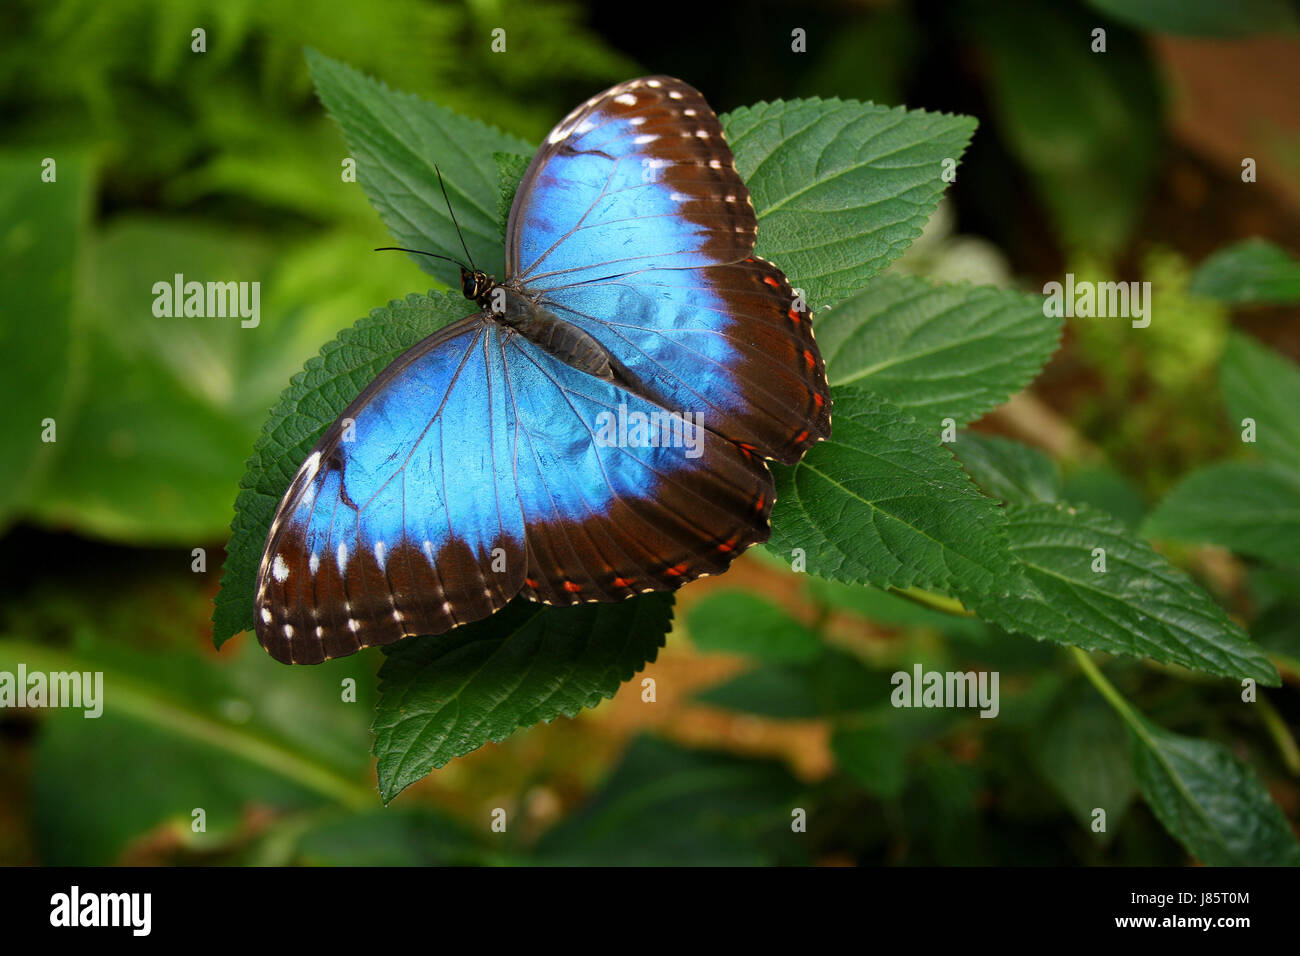 Mariposa insecto selva de biodiversidad del bosque lluvioso insecto azul marrón Foto de stock